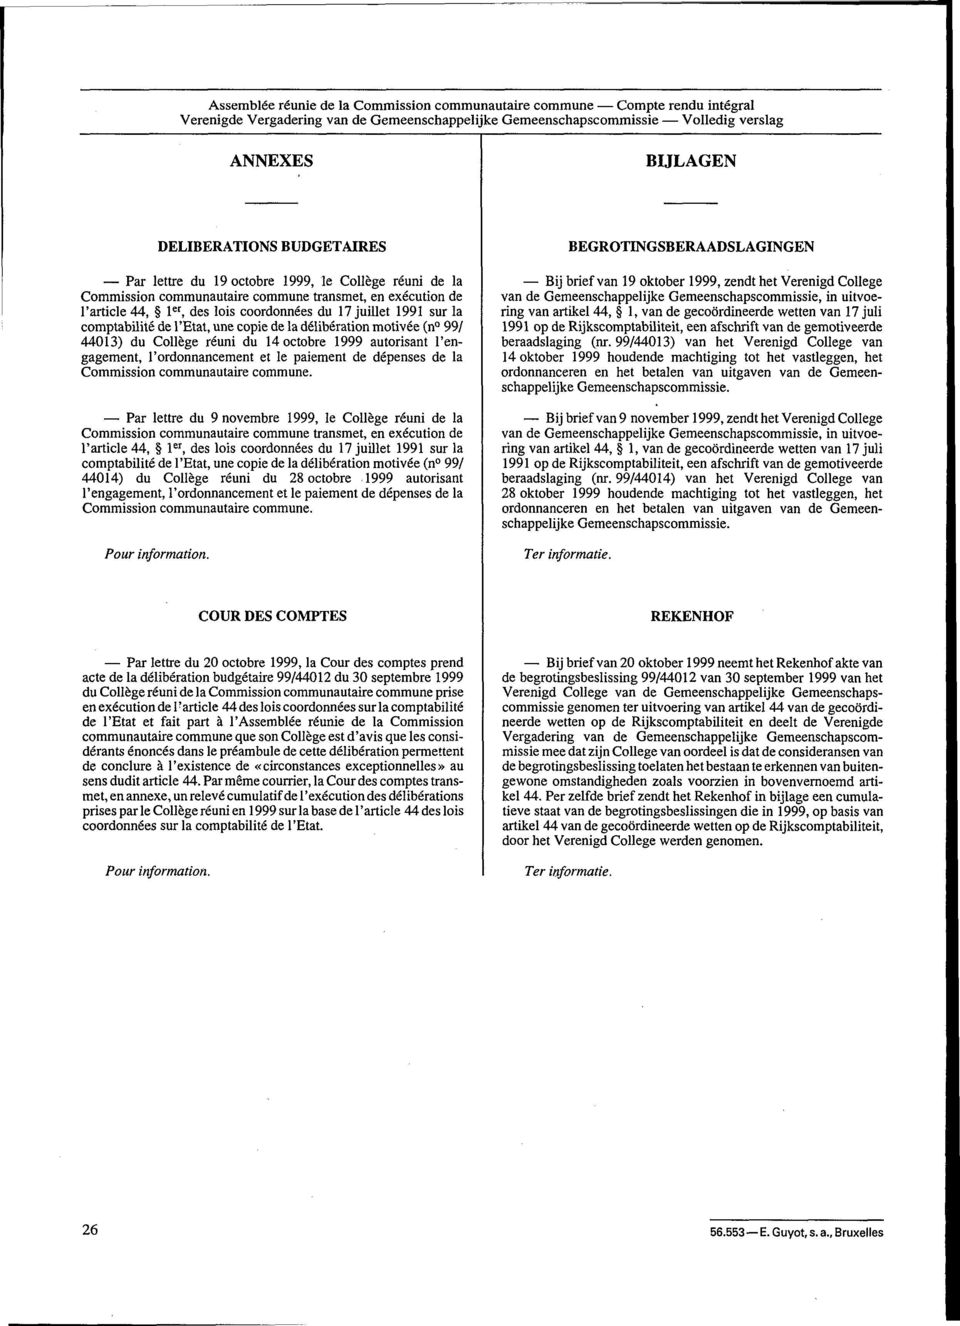 comptabilité de l'etat, une copie de la délibération motivée (n 99/ 44013) du Collège réuni du 14 octobre 1999 autorisant l'engagement, l'ordonnancement et le paiement de dépenses de la Commission